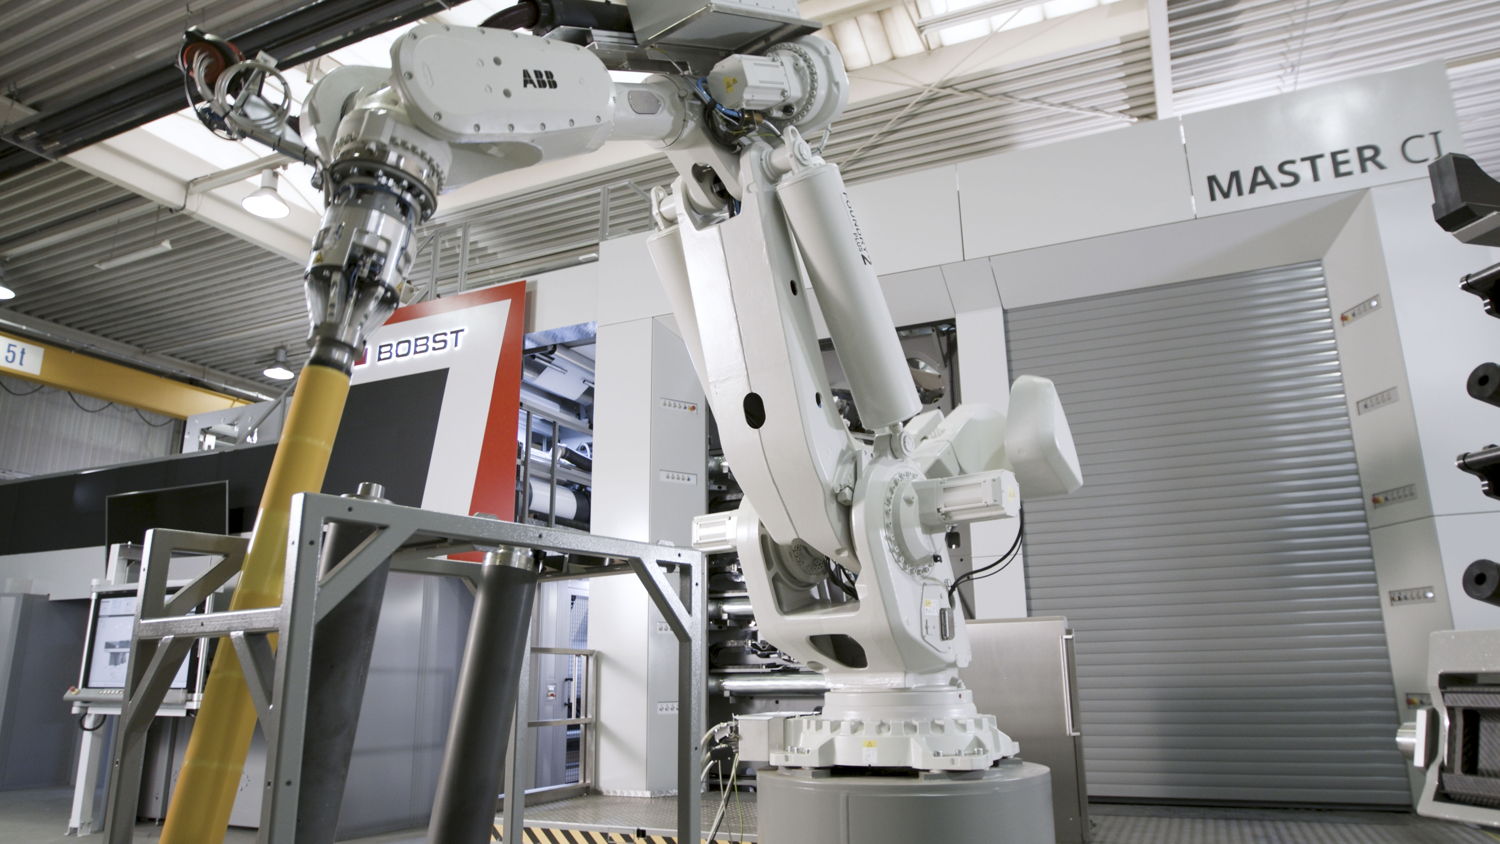 Pоботизированная система smartDROID крупным планом перед секцией печати флексографской машины BOBST MASTER CI.